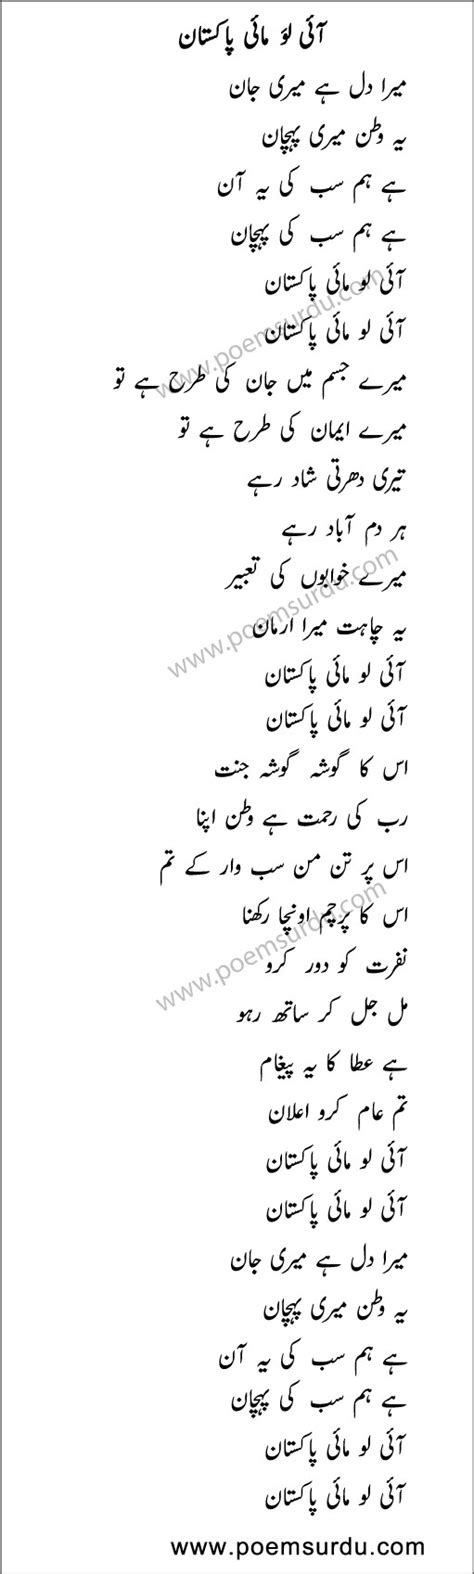 love song lyrics quotes  urdu  quotes